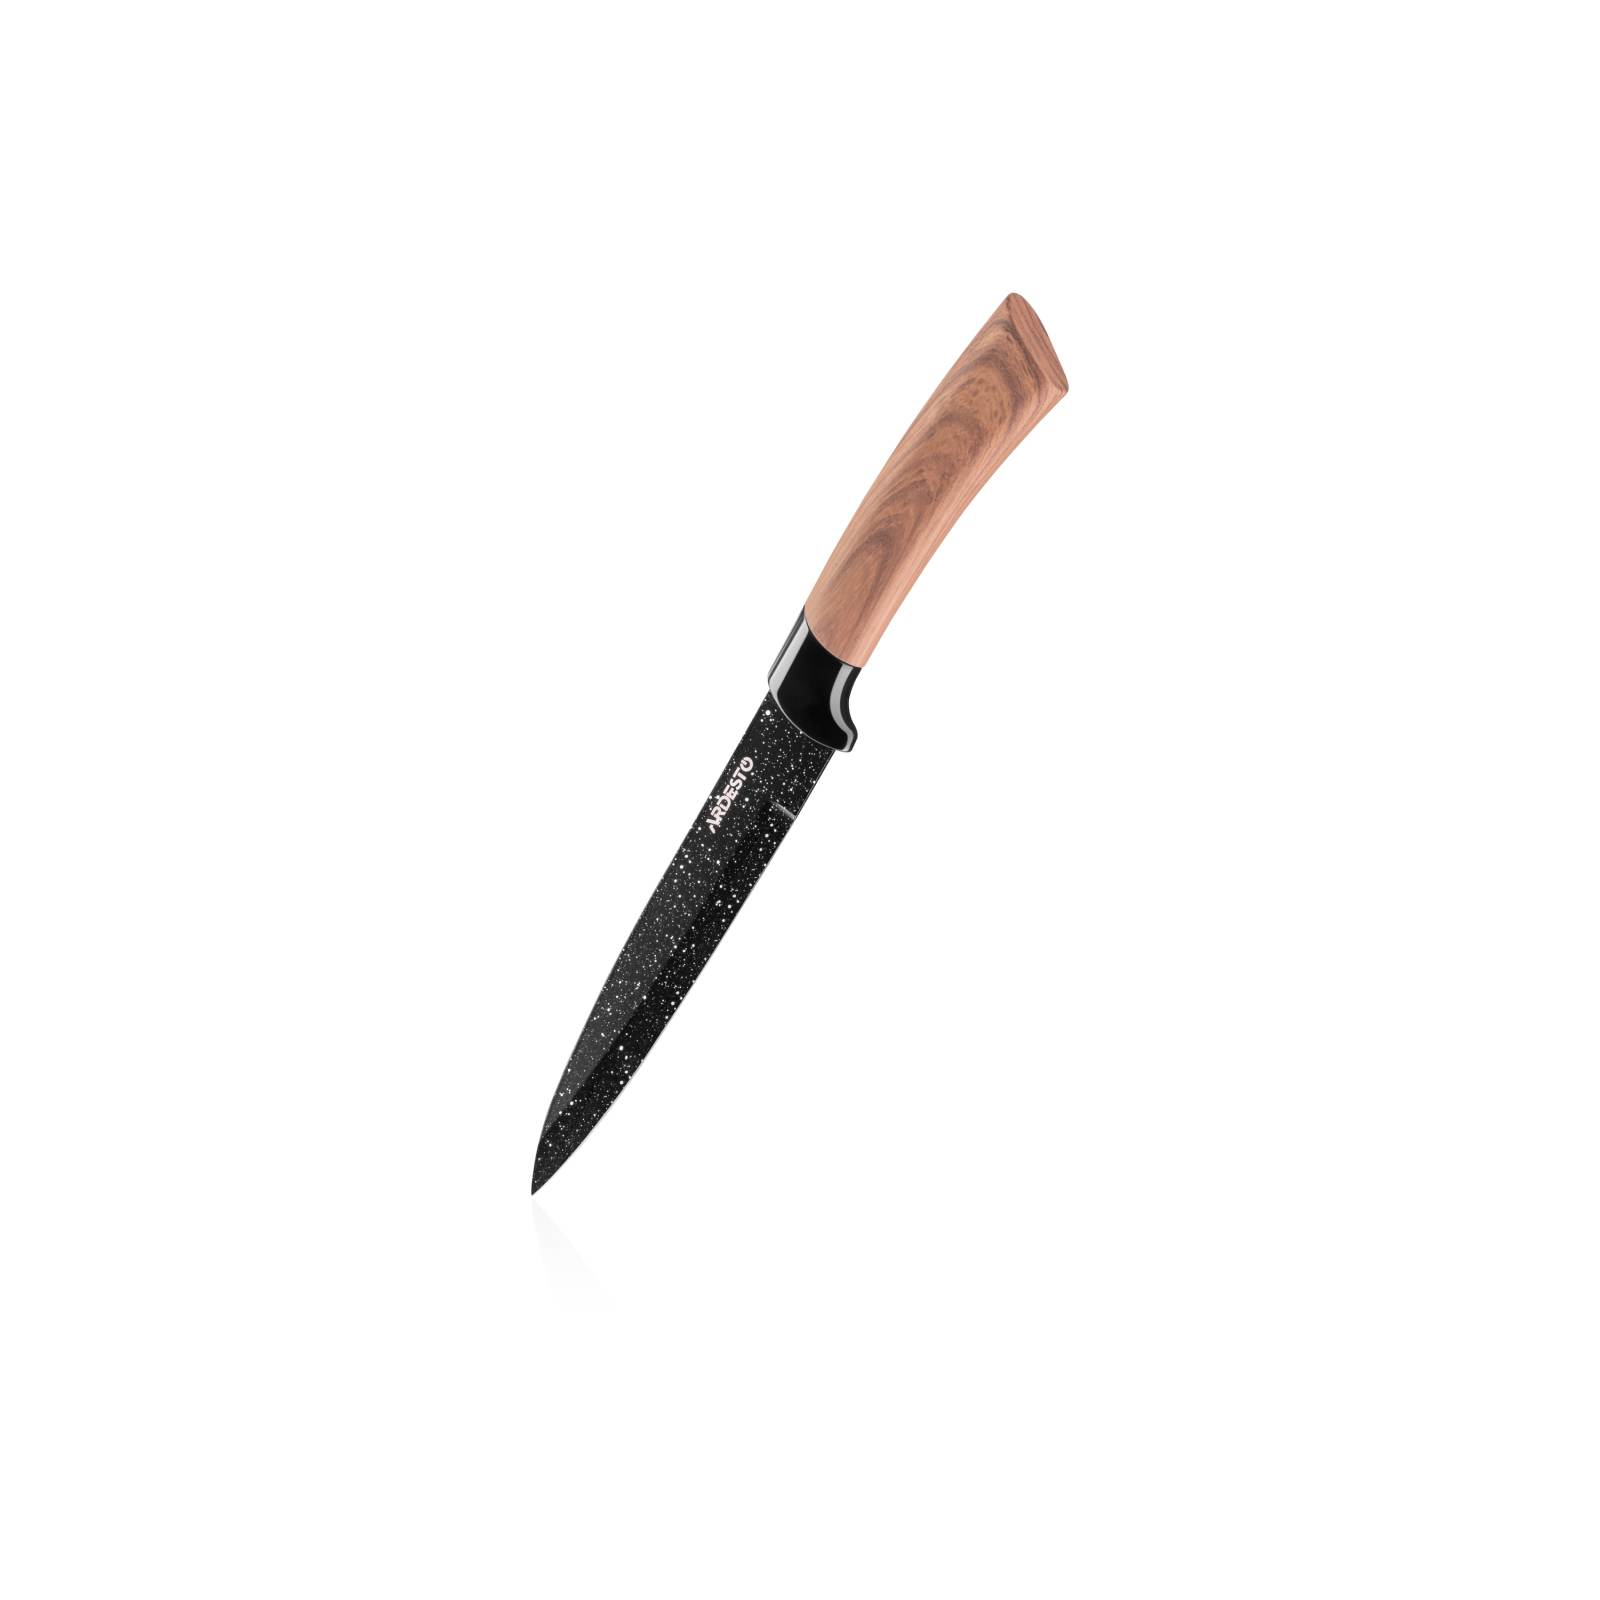 Набір ножів Ardesto Midori 5 предм Light (AR2105WD) зображення 3